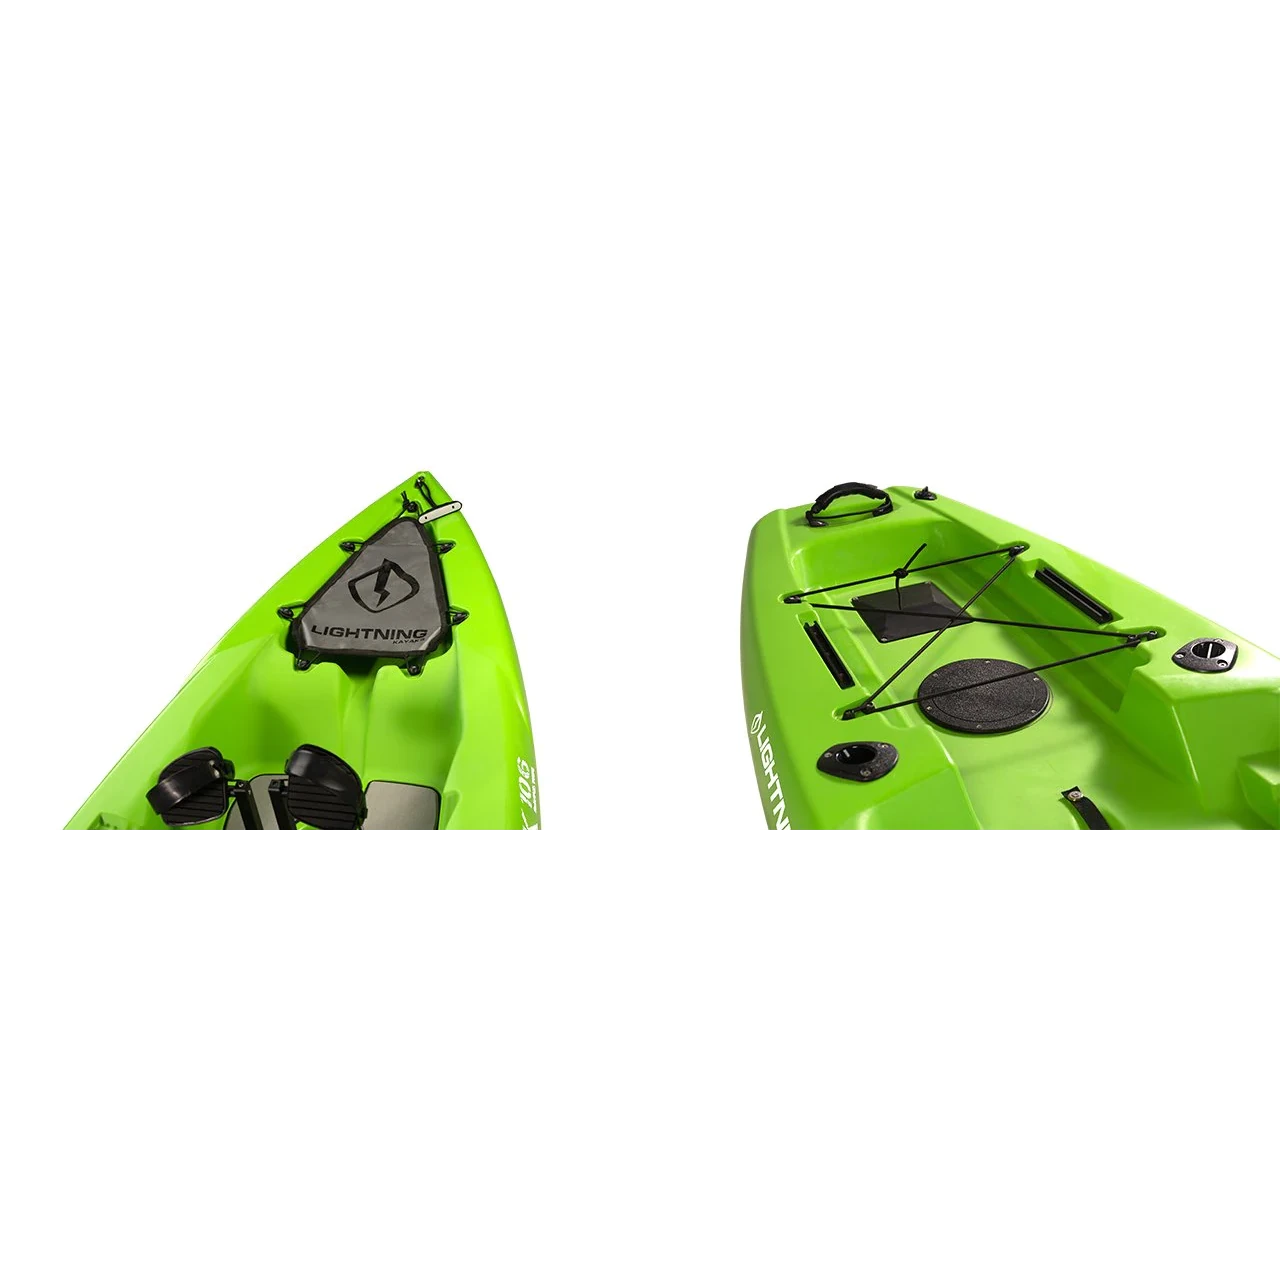 Custom Kayak Builds – YAKWORKS Kayaks and Accessories